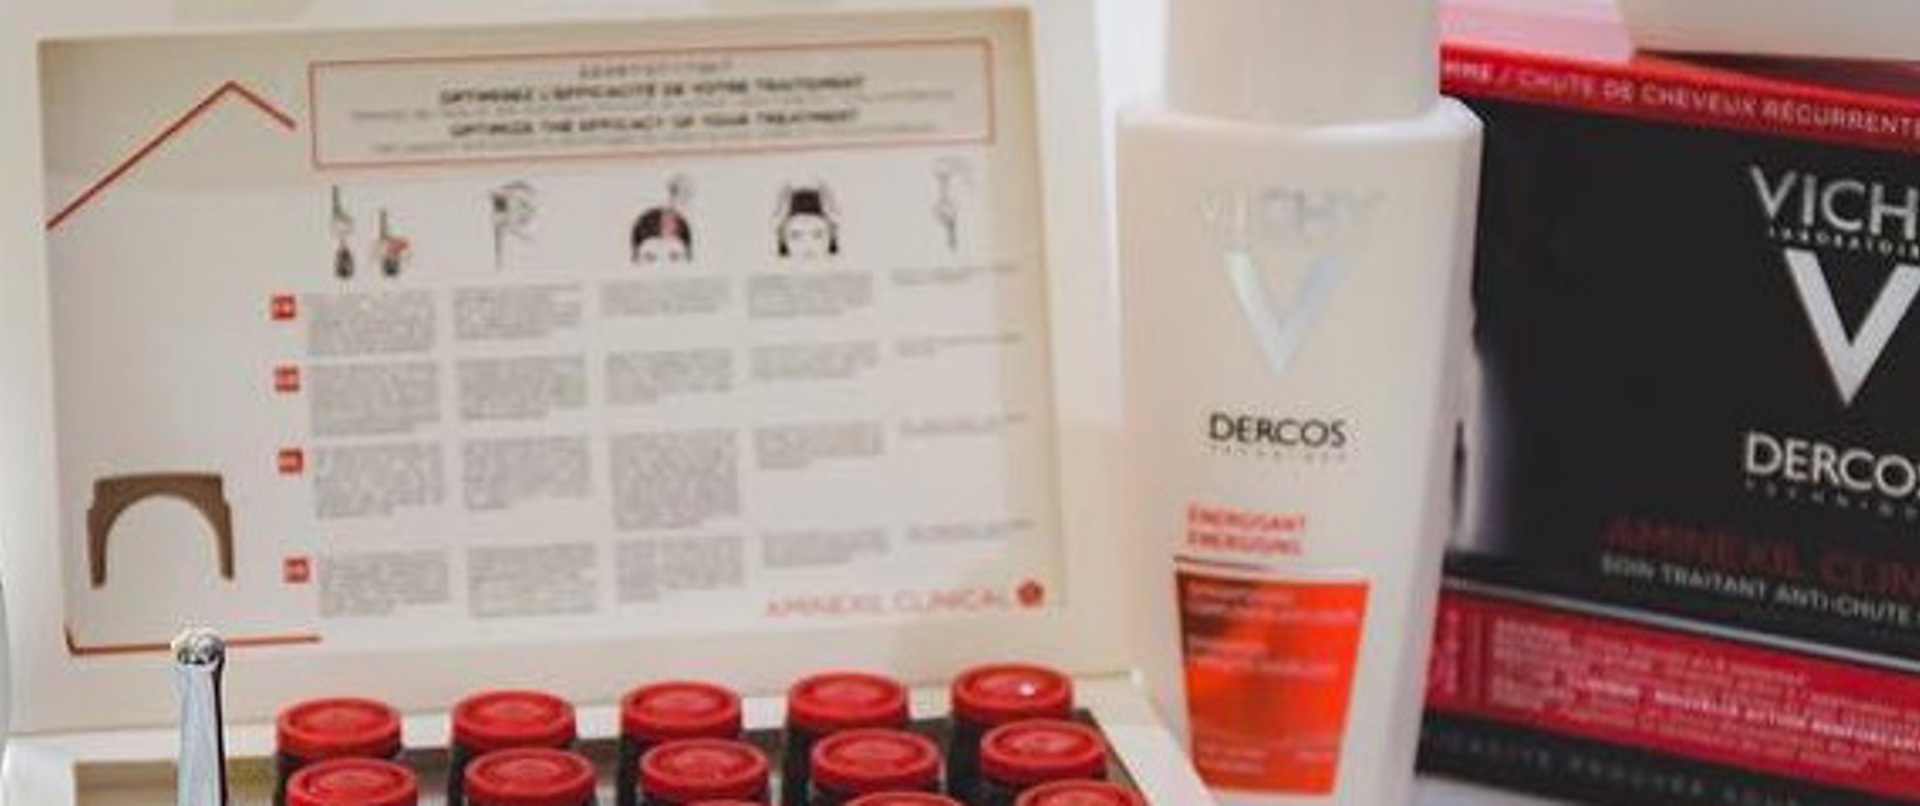 Saç Sırları.com inceledi: Vichy Dercos Energisant serisi ve Aminexil Serum